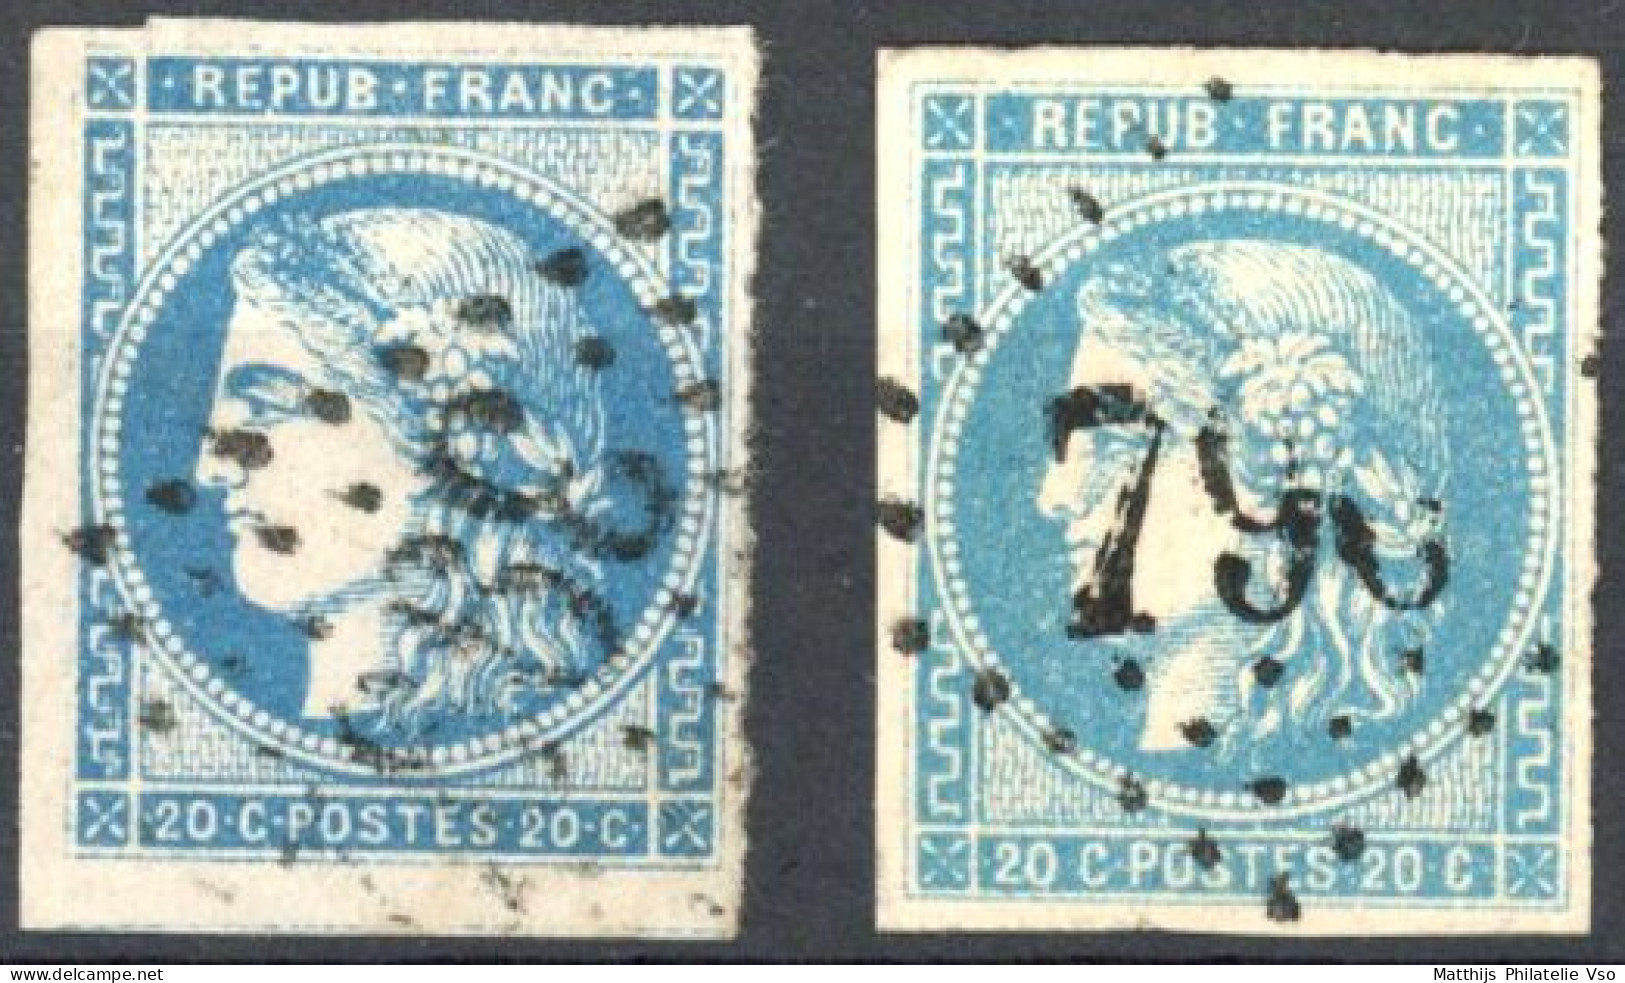 [O SUP] N° 46A+46B, 20c Bleu (type III) Les 2 Reports - Timbres Bien Margés - Cote: 225€ - 1870 Ausgabe Bordeaux